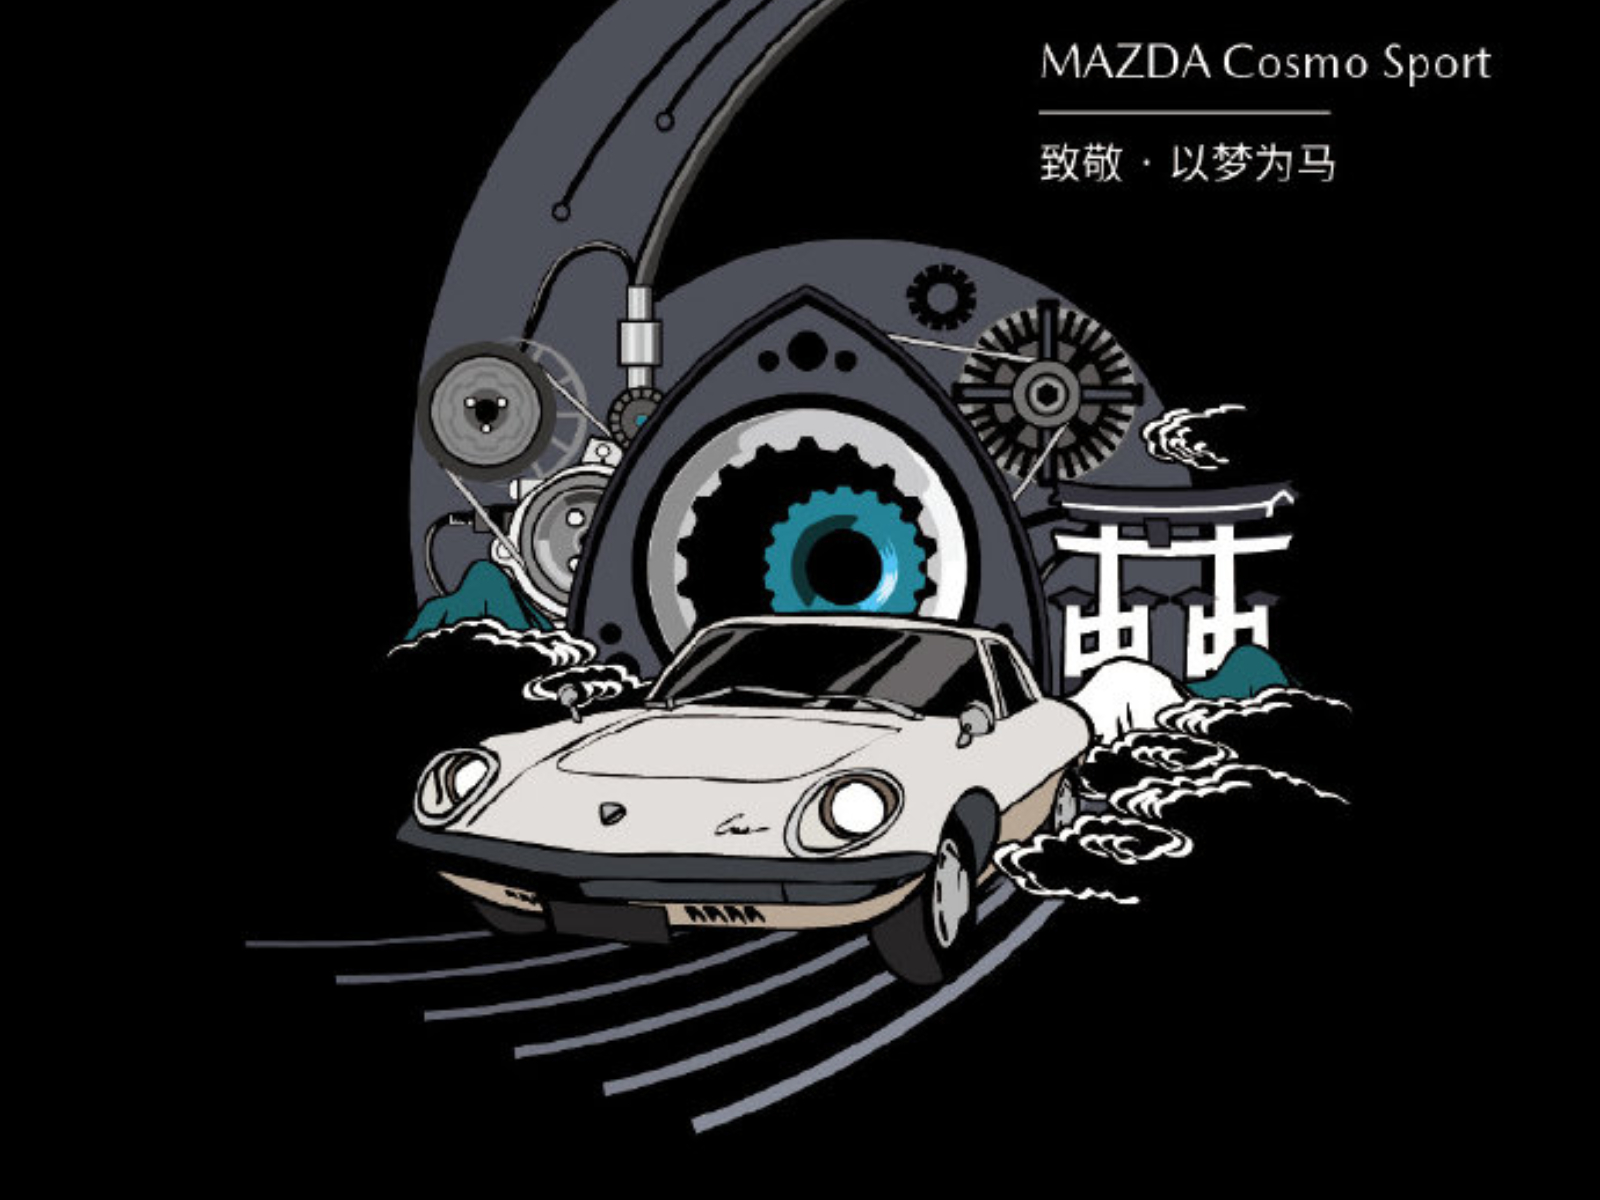 マツダ新型ロータリーレンジエクステンダーが東京モーターショーに登場か Moby モビー